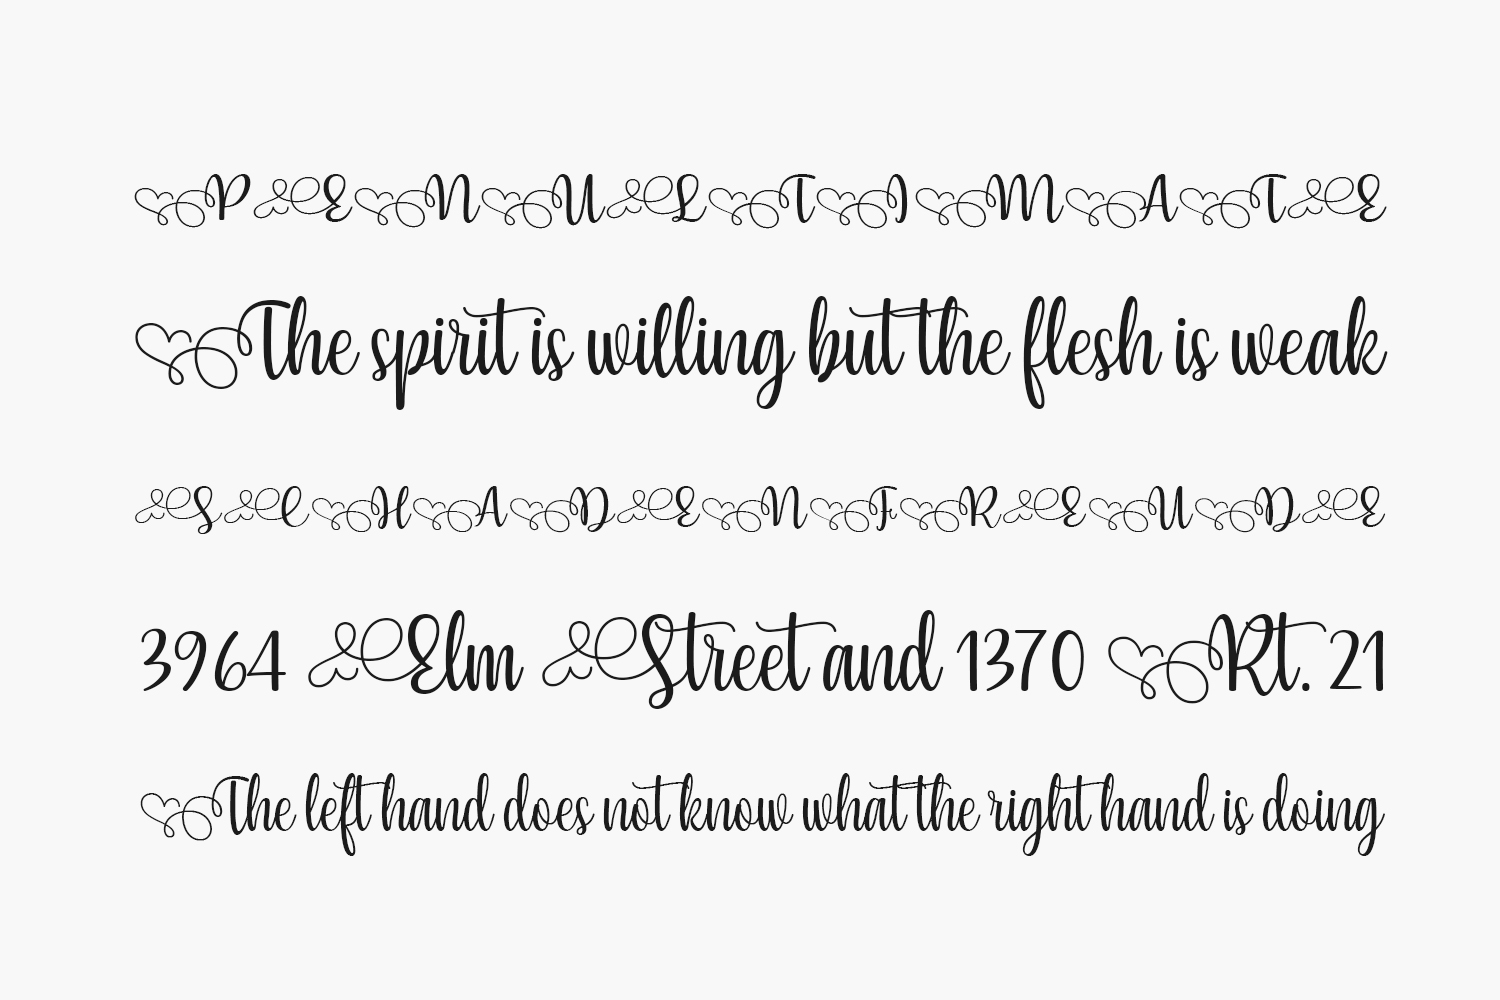 Yessy font download: Bạn đang tìm kiếm một phong cách mới cho thiết kế của mình? Hãy tải về Yessy font để làm mới và thêm phong cách cho từng dự án. Với kiểu chữ độc đáo và chất lượng, đây chắc chắn là sự lựa chọn tuyệt vời cho các nhà thiết kế chuyên nghiệp cũng như những người mới bắt đầu.